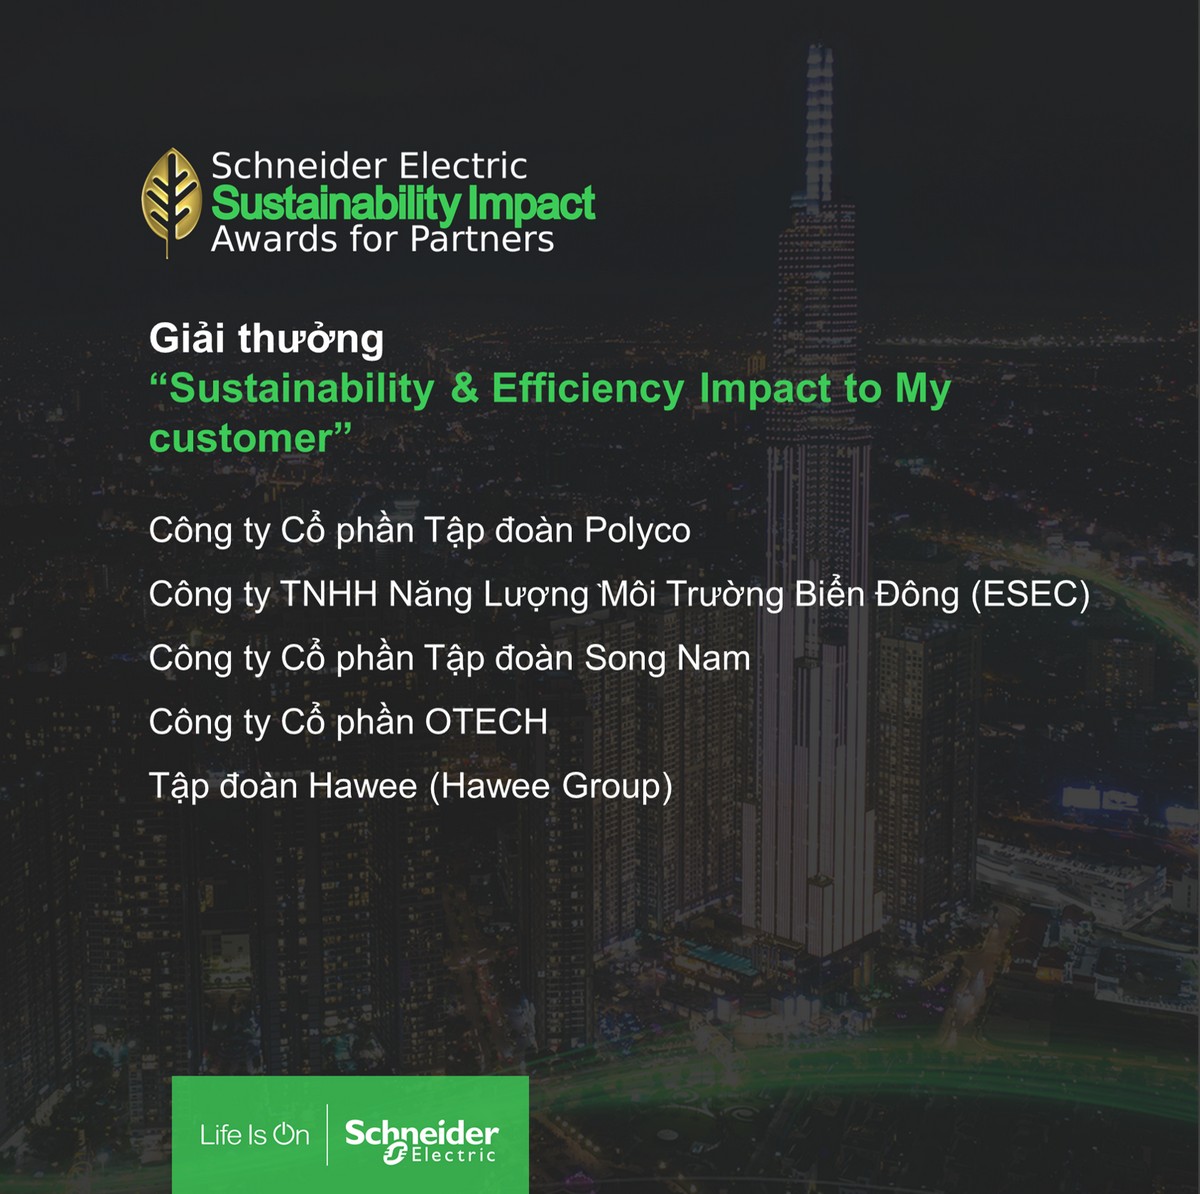 Schneider Electric vinh danh 11 đối tác đổi mới sáng tạo vì Việt Nam bền vững